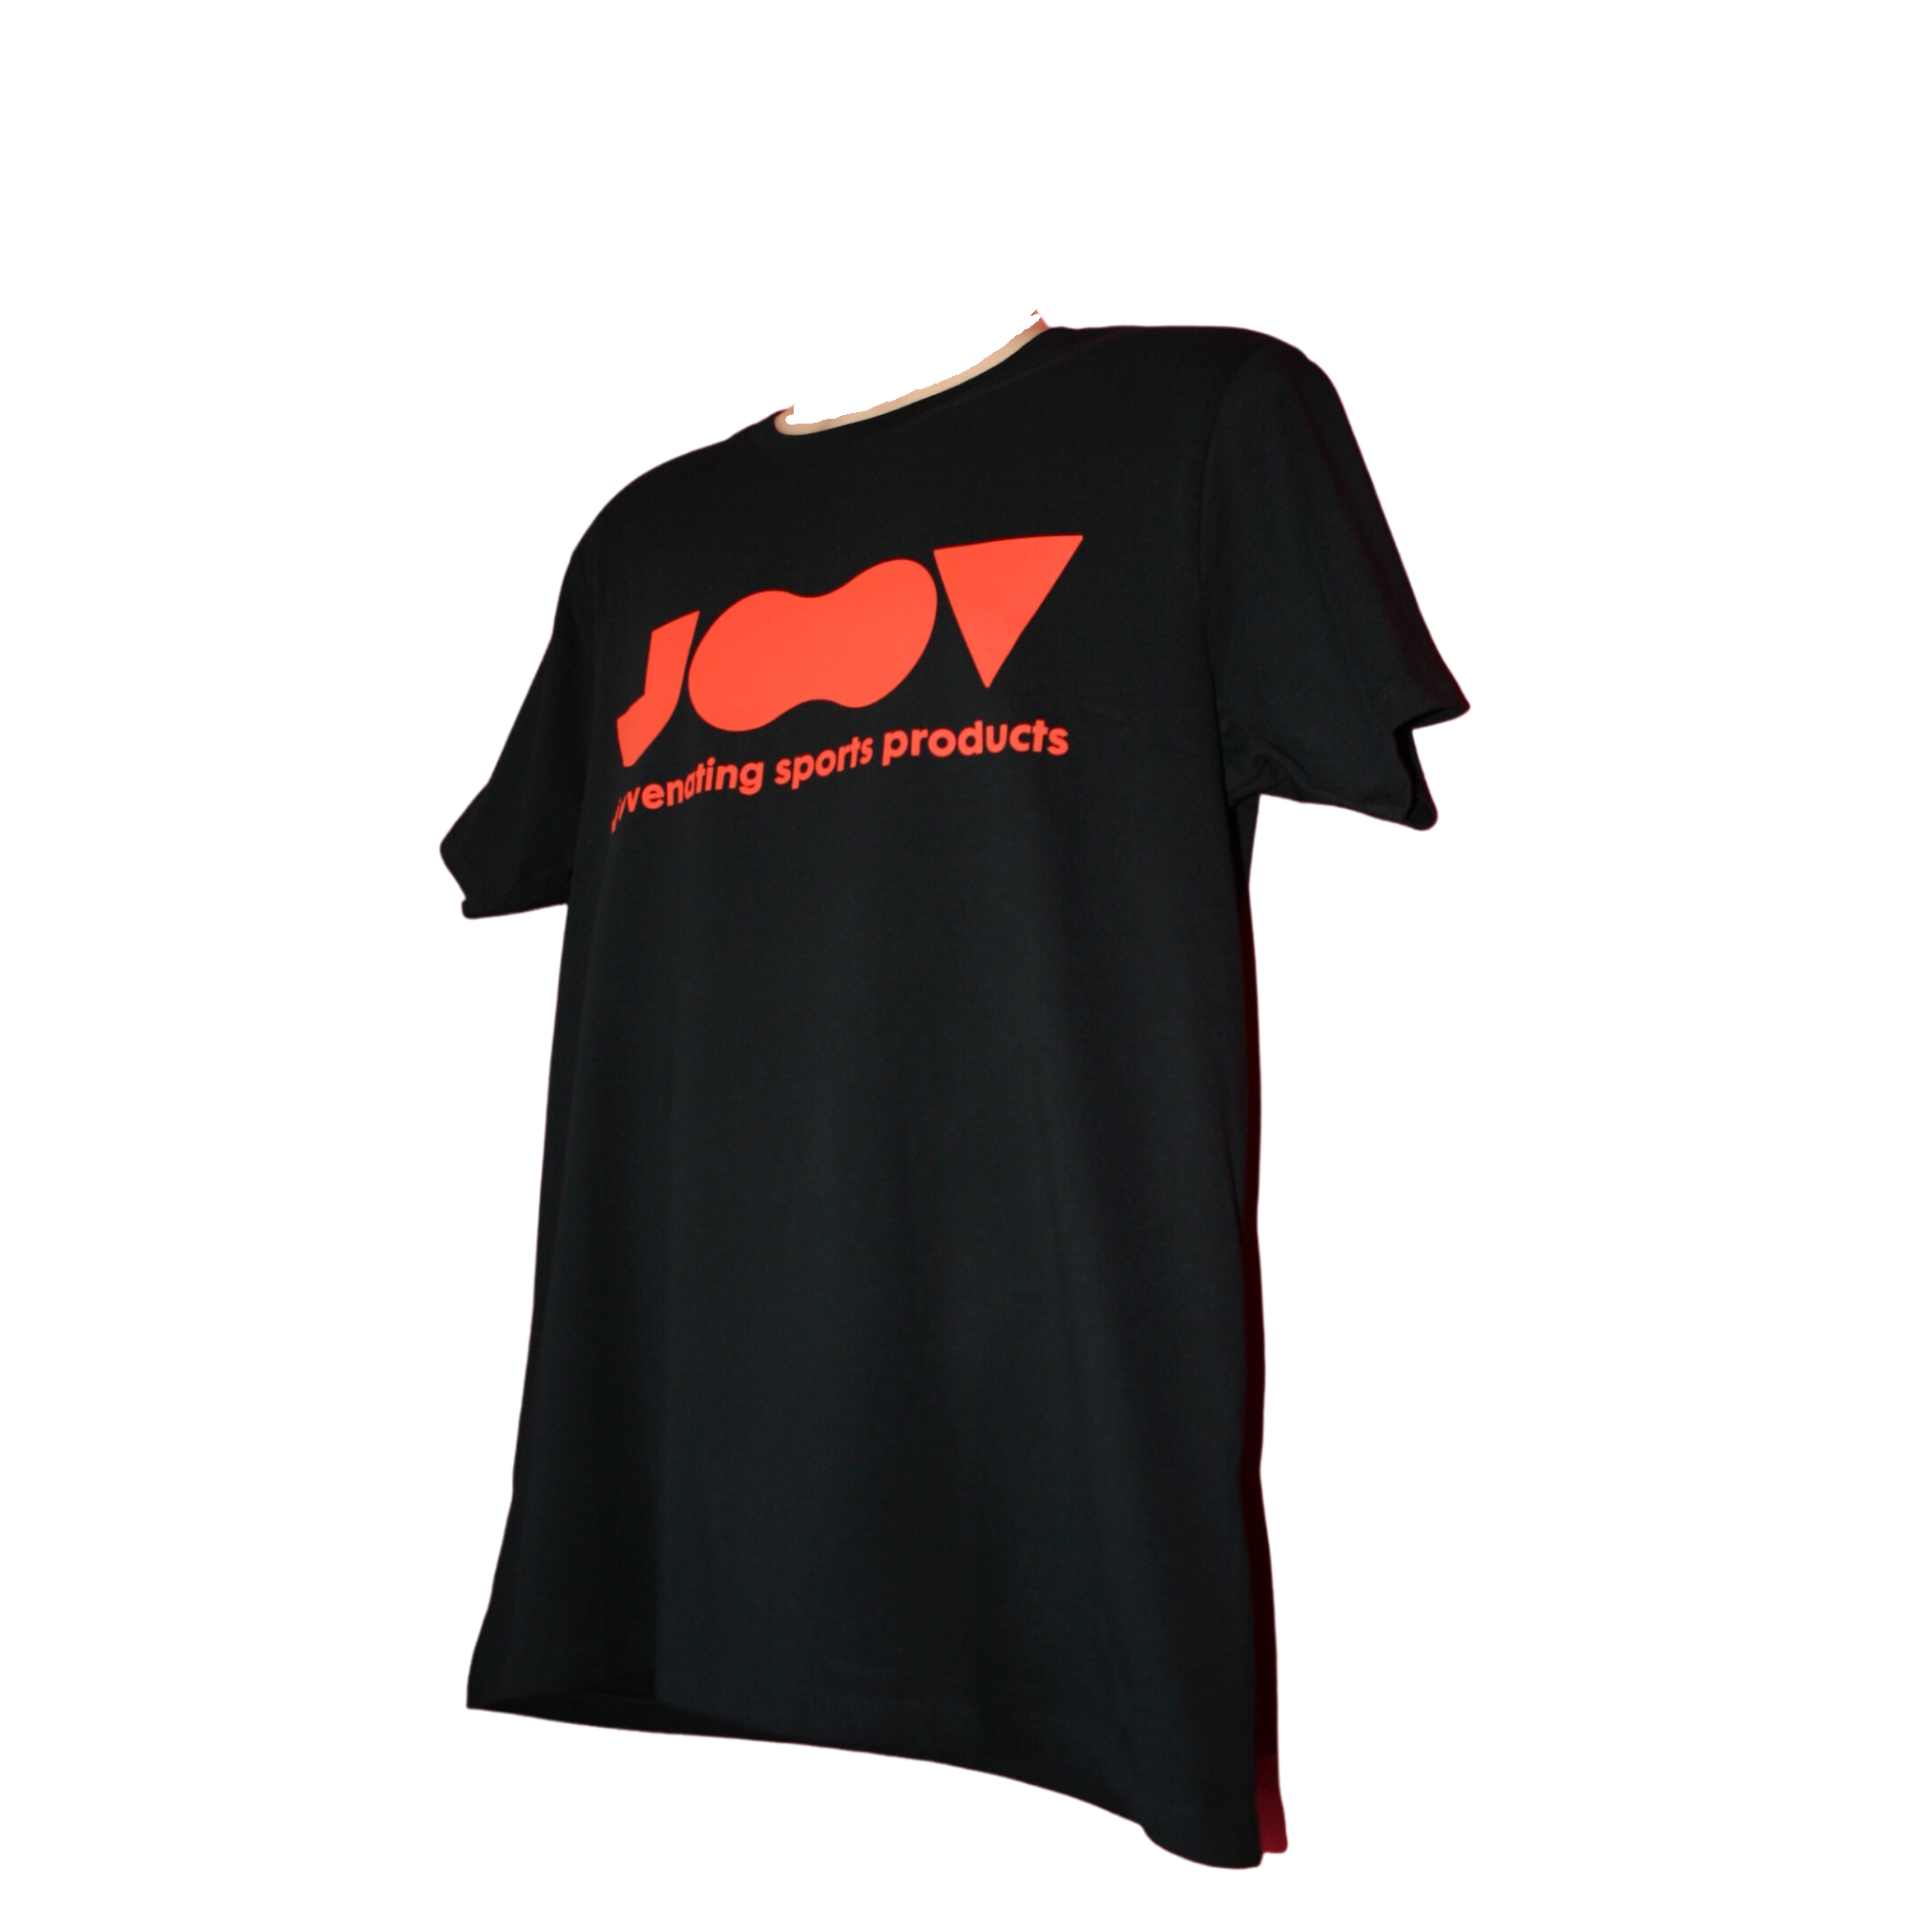 JOOV Tshirt: Black + Red Design